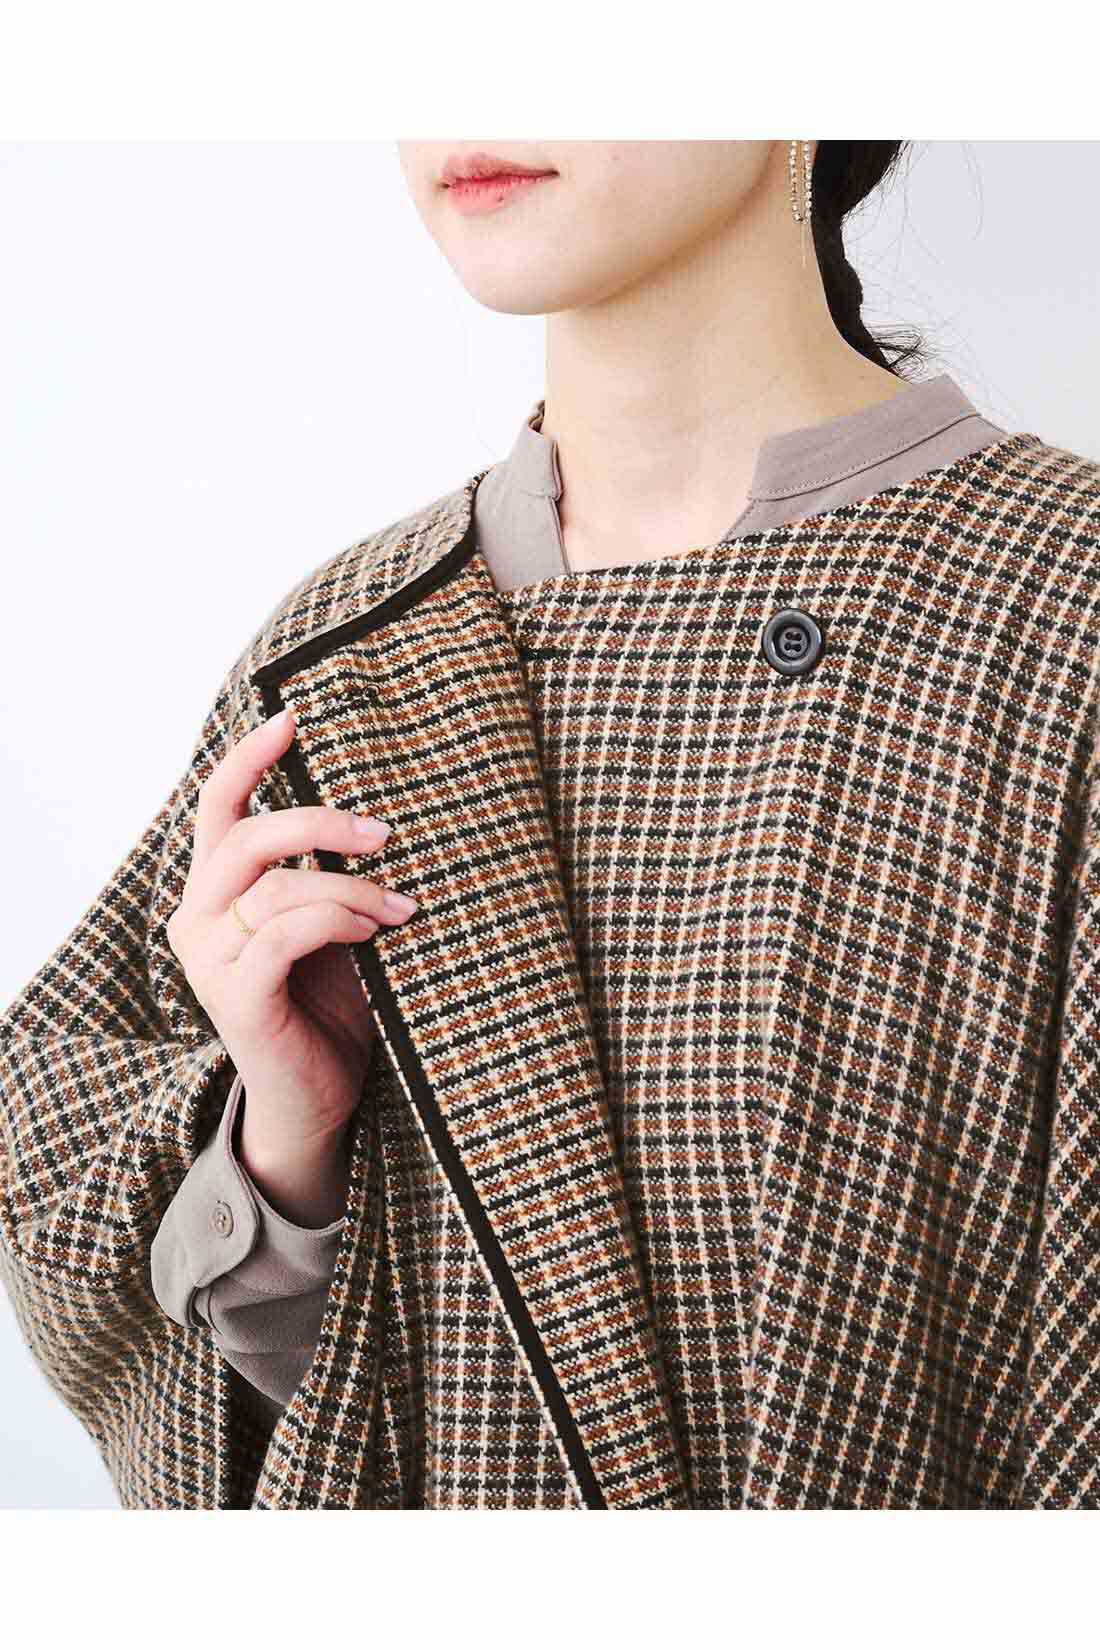 Real Stock|IEDIT[イディット]　辻元舞さんコラボ シンプルコーデに着映え感をプラスするポンチョコーディガン〈キャメル〉|衿もとの内側の隠しボタンを留めると、きちんと着られます。